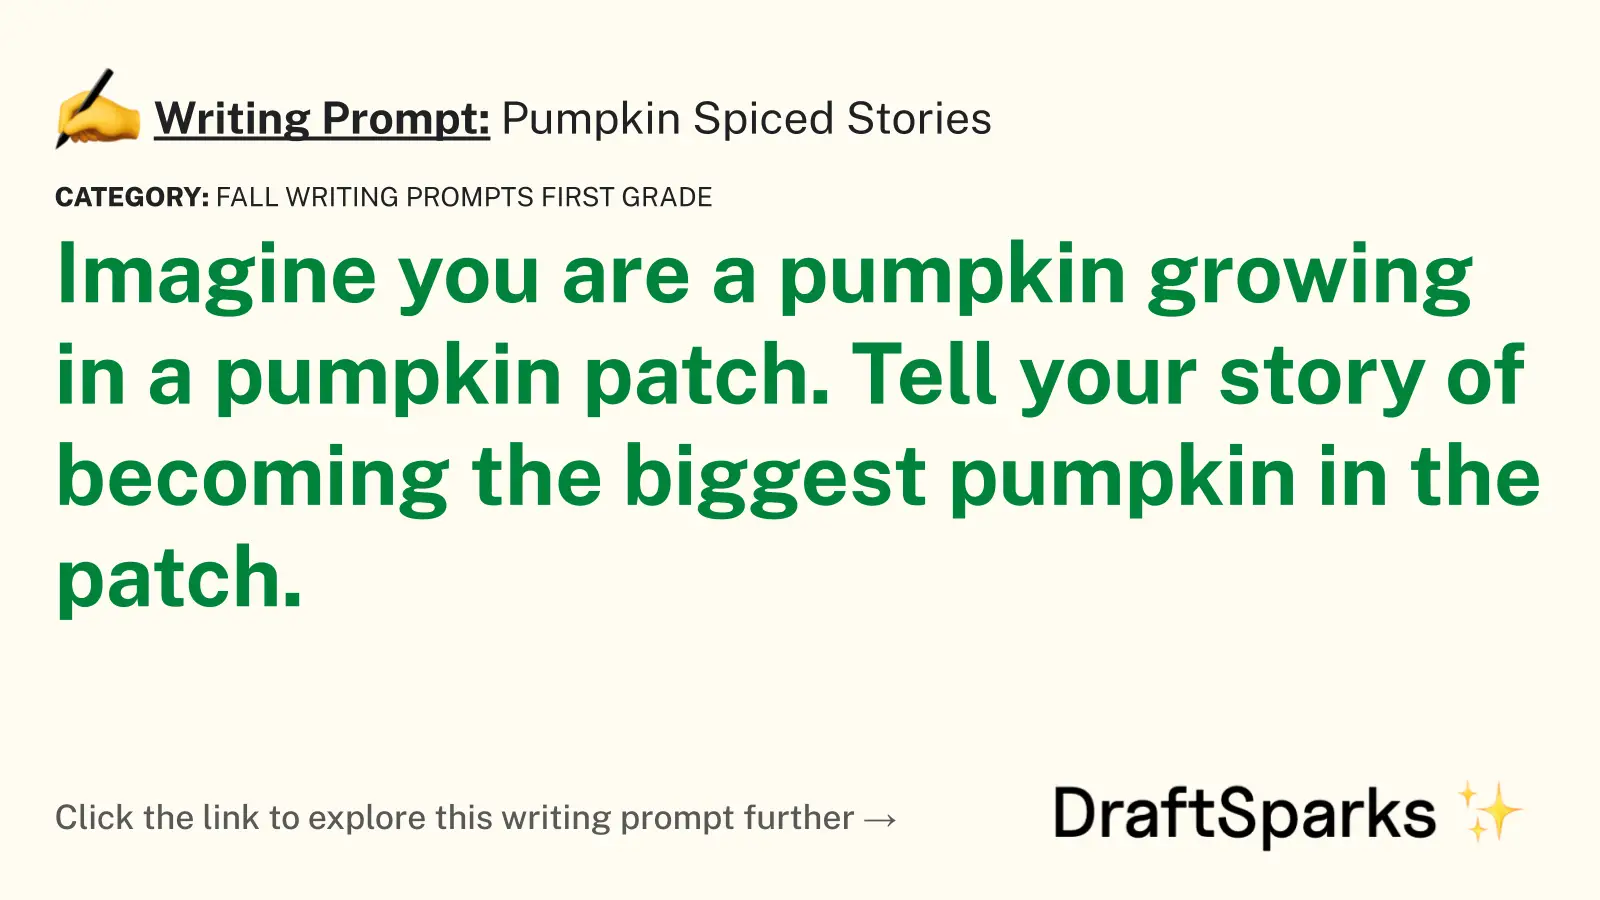 Pumpkin Spiced Stories